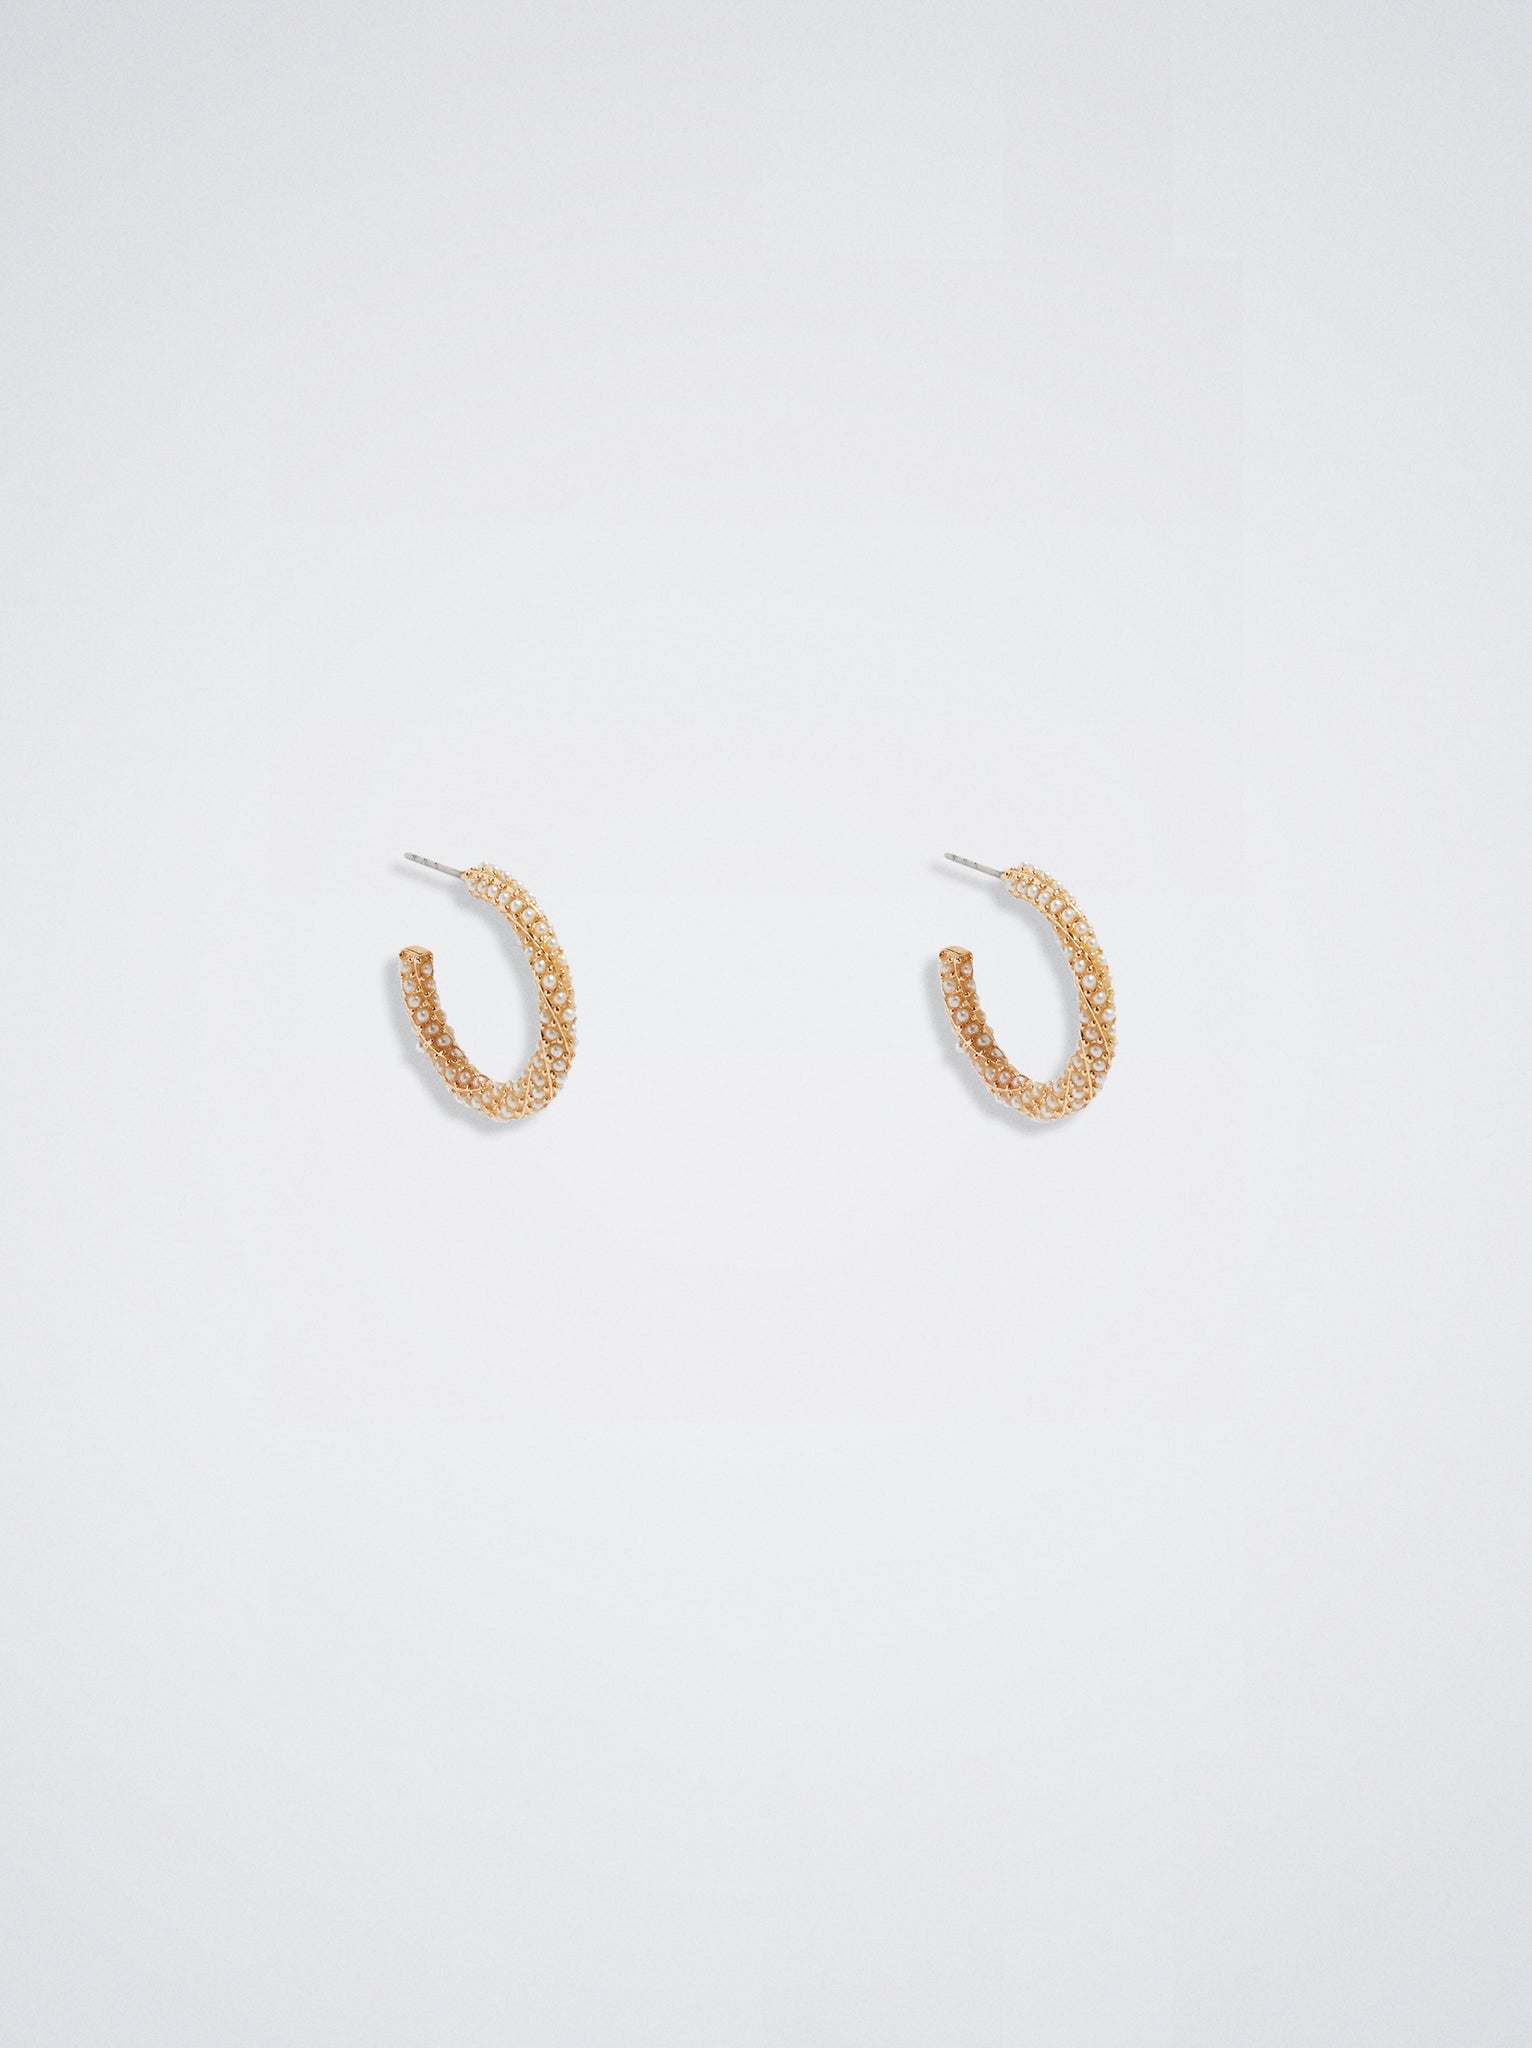 Hoop Earrings With Pearls